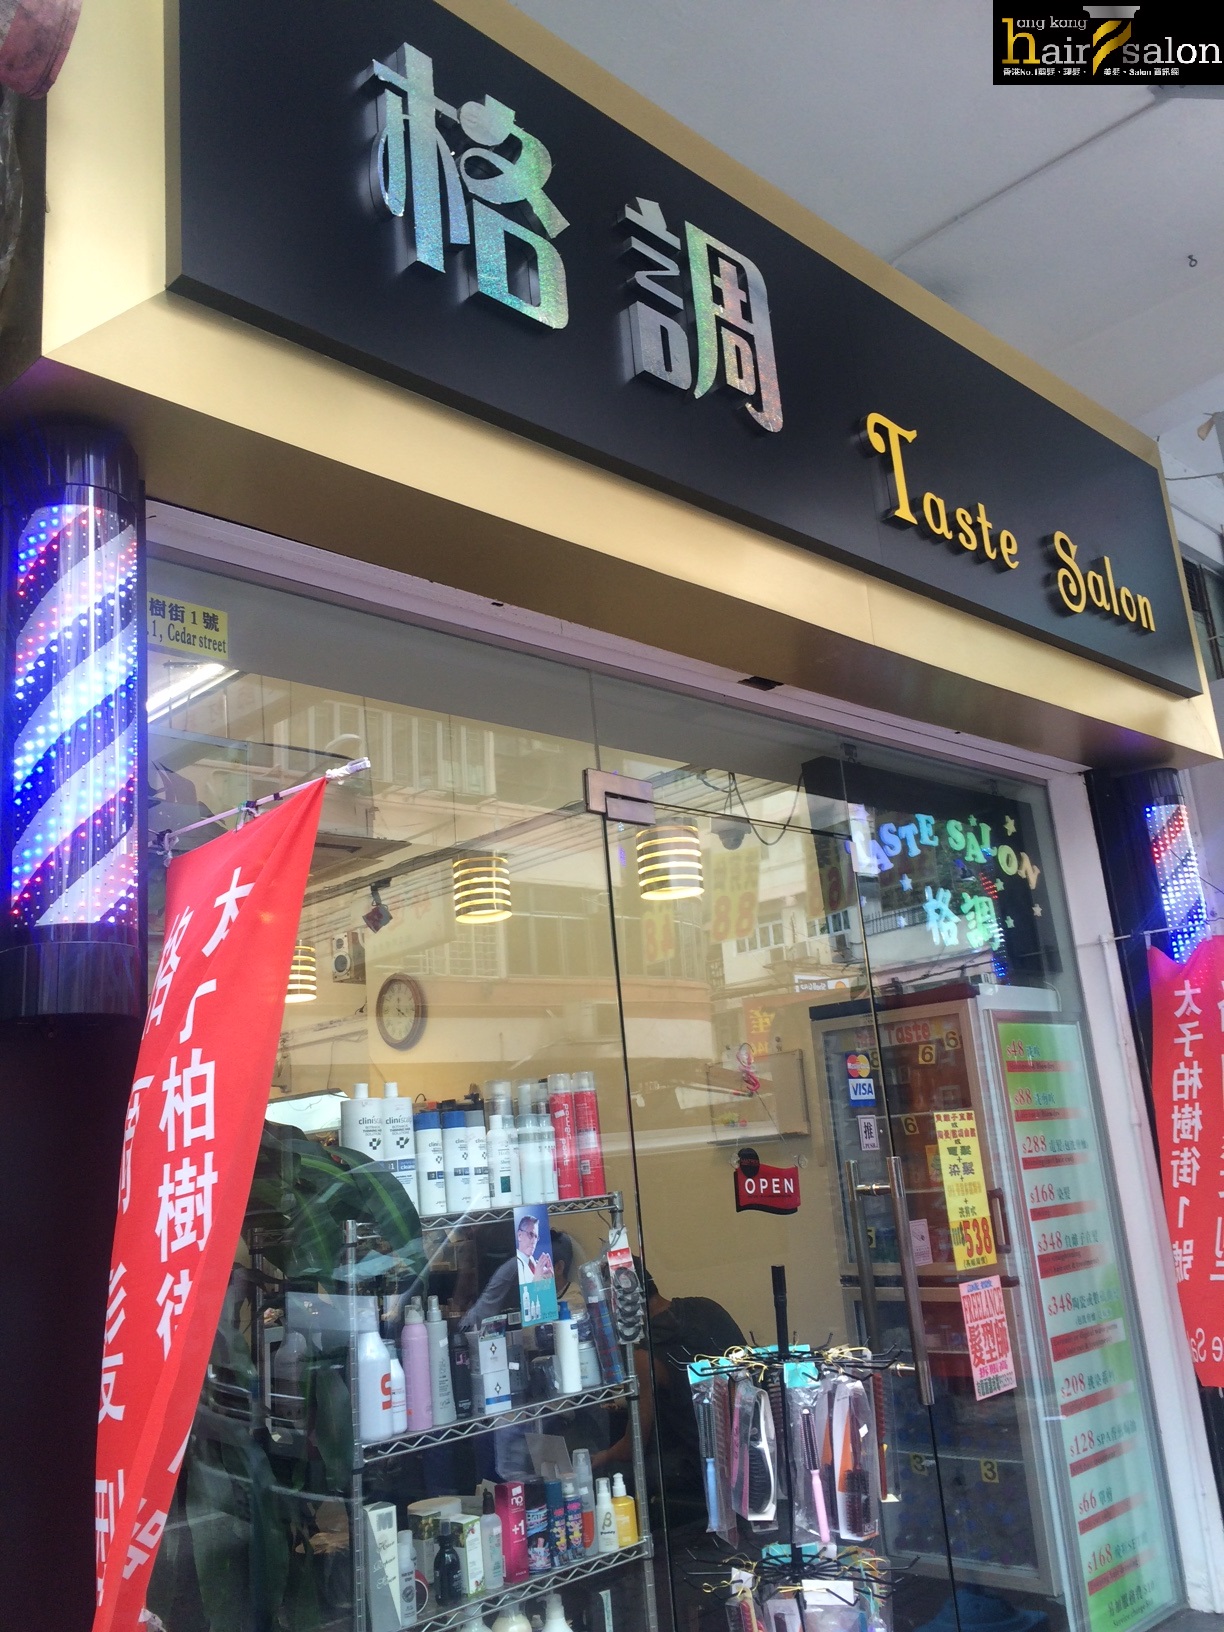 香港美髮網 HK Hair Salon 髮型屋Salon / 髮型師: Taste Salon 格調髮型